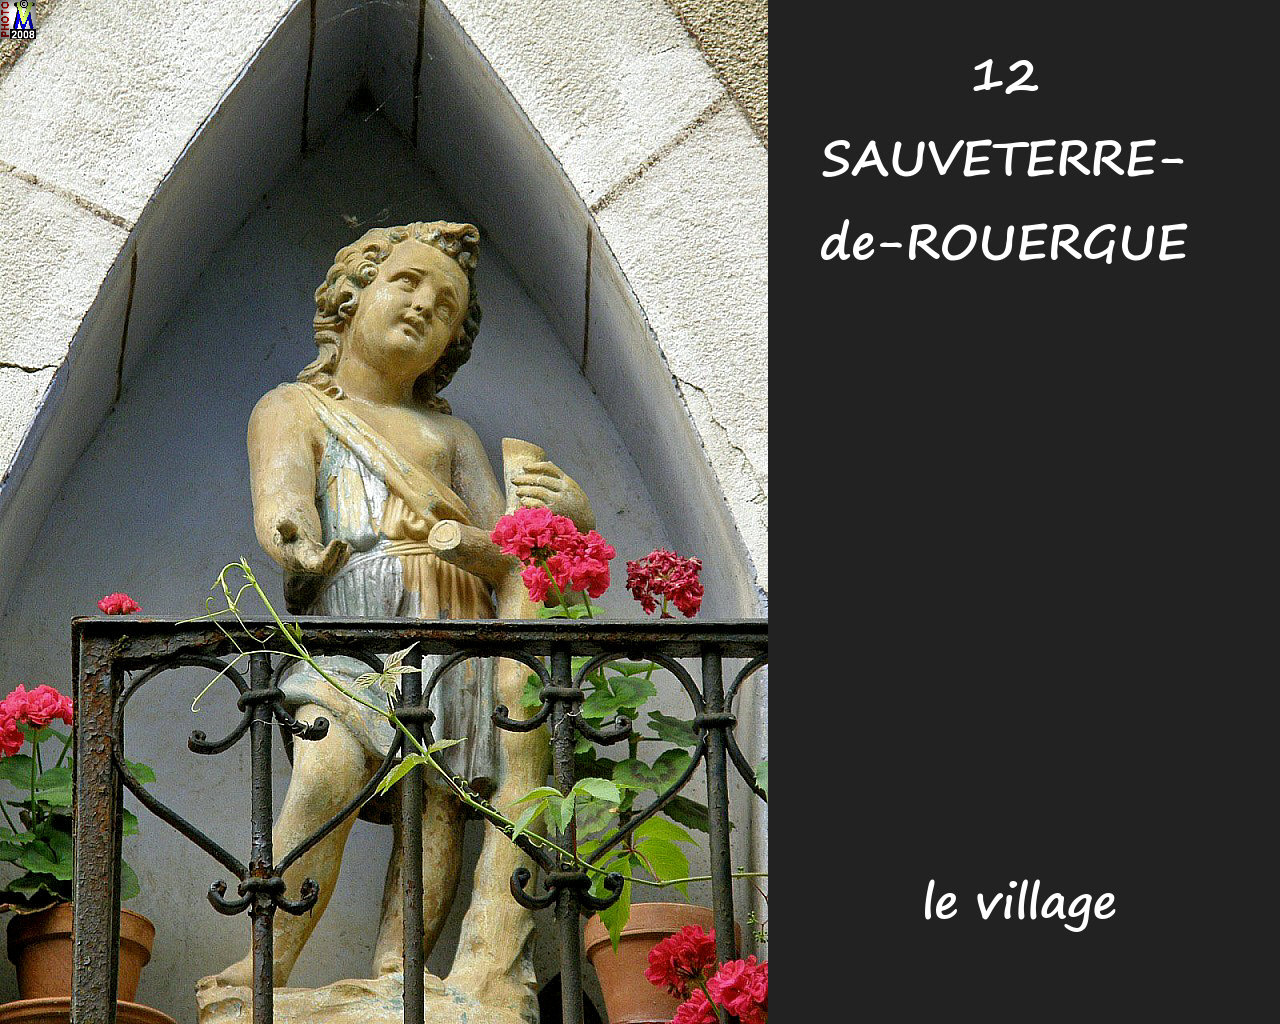 12SAUVETERRE-ROUERGUE_village_156.jpg